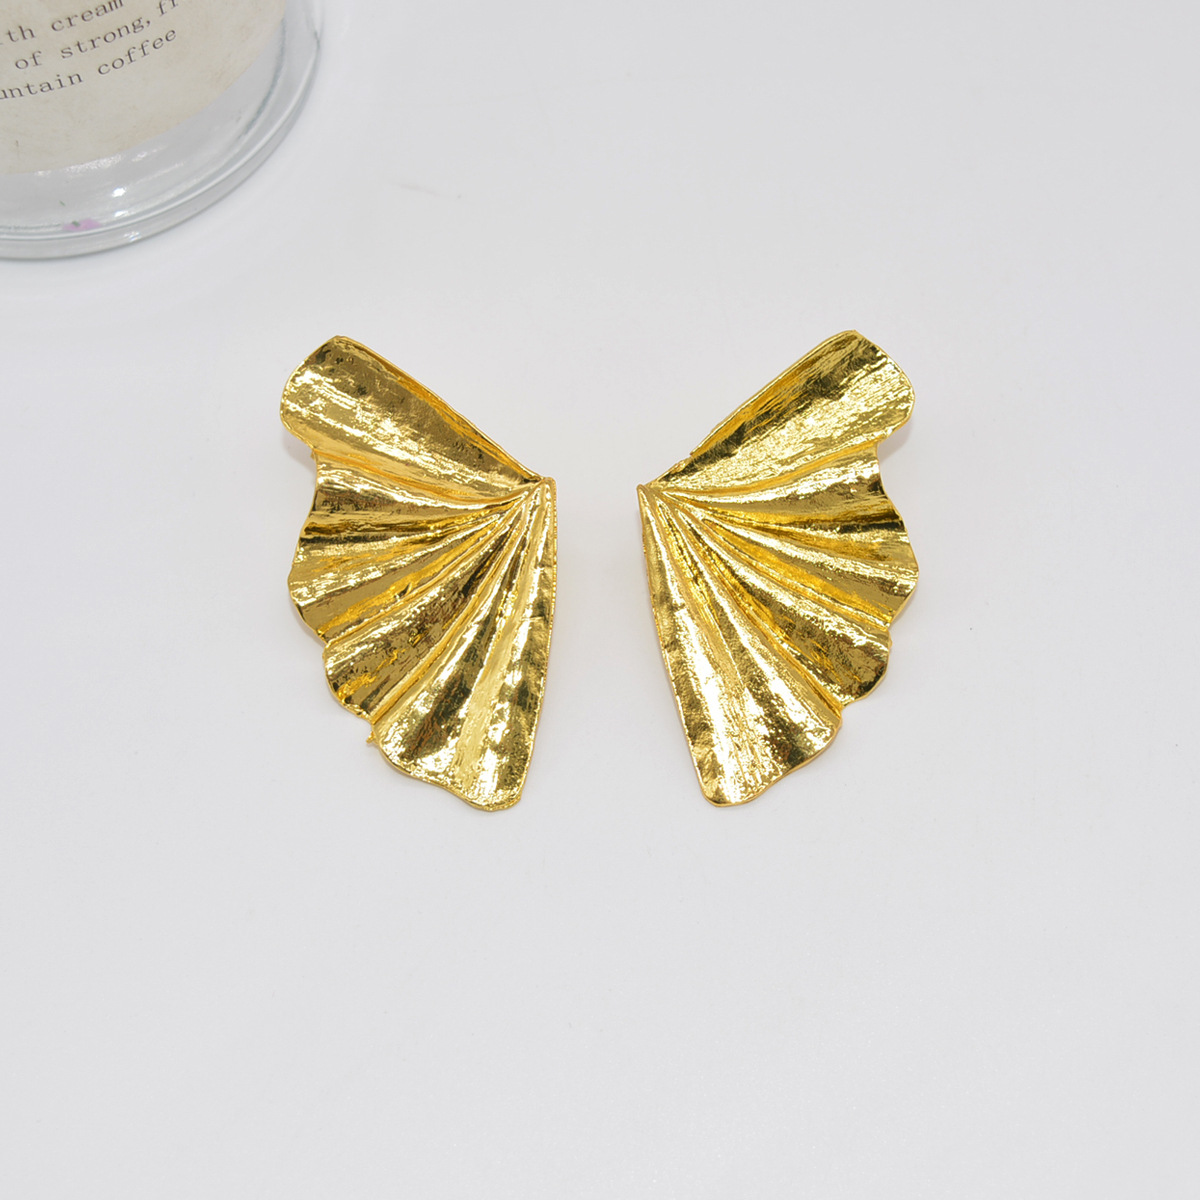 Personality Design Metal Vintage Leaf Earrings Simple Earrings Versatile Popular Earrings